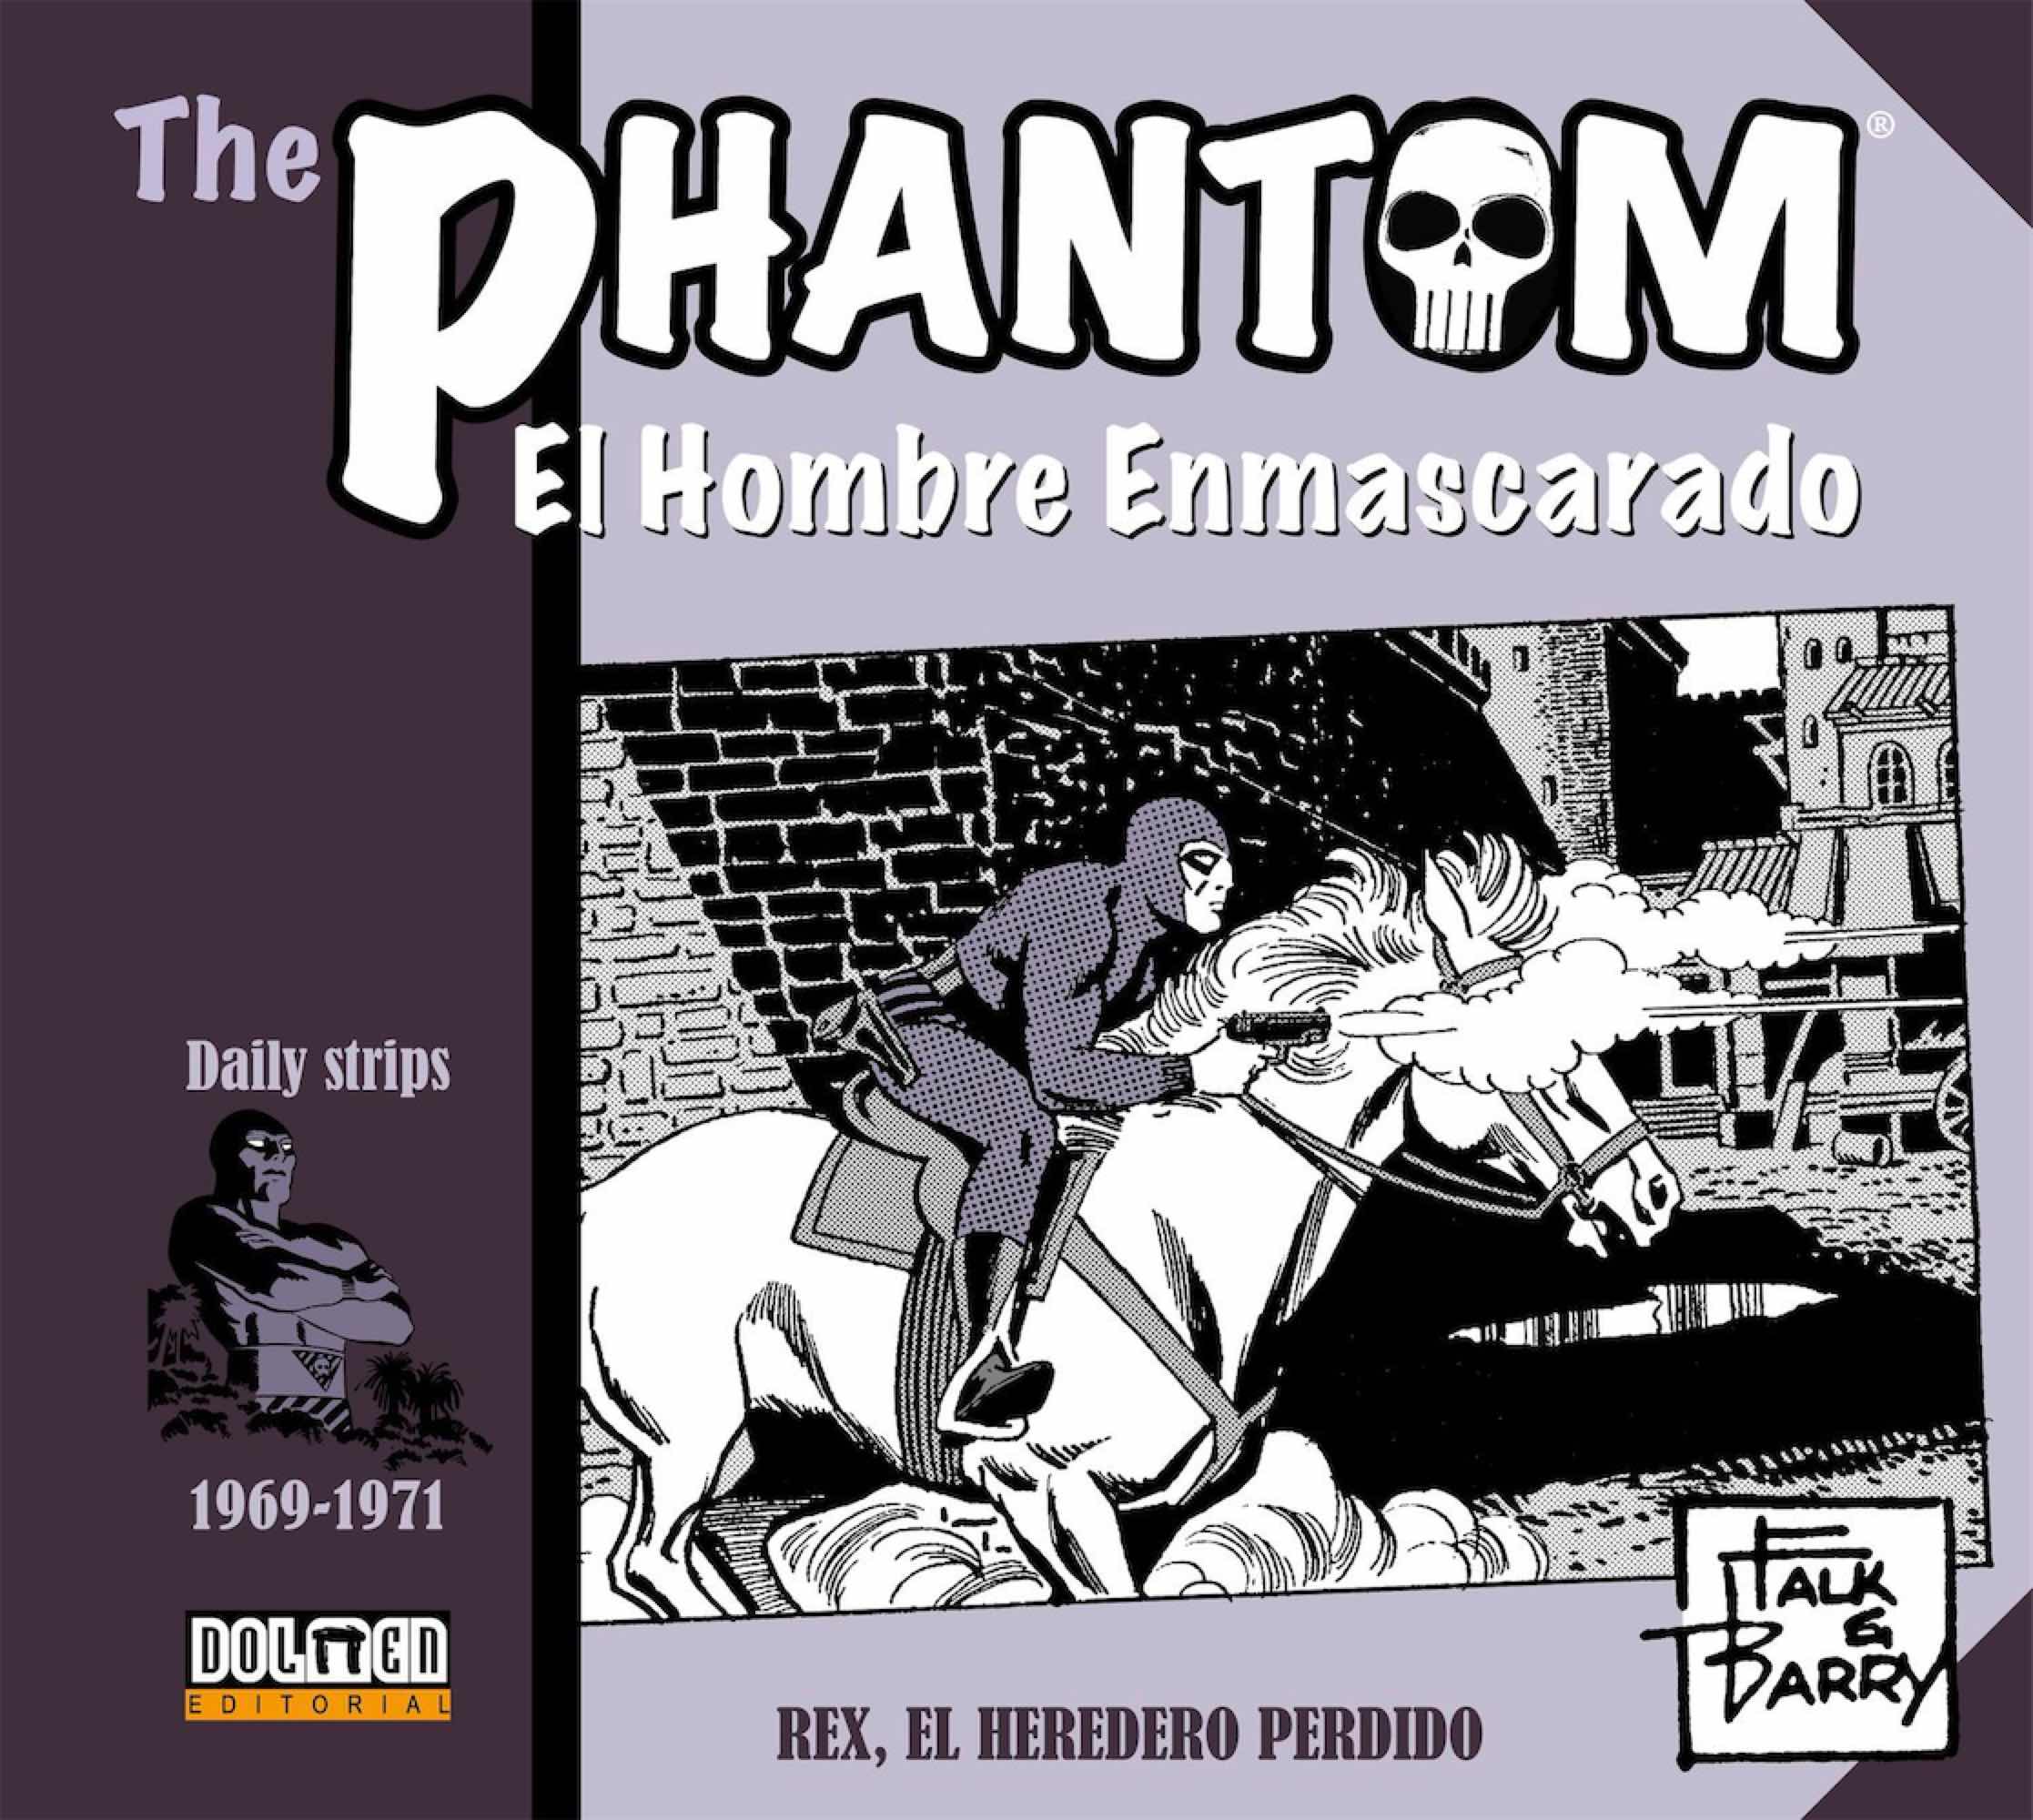 THE PHANTOM. EL HOMBRE ENMASCARADO (1969-1971 DAILY STRIPS) REX, EL HEREDERO PERDIDO